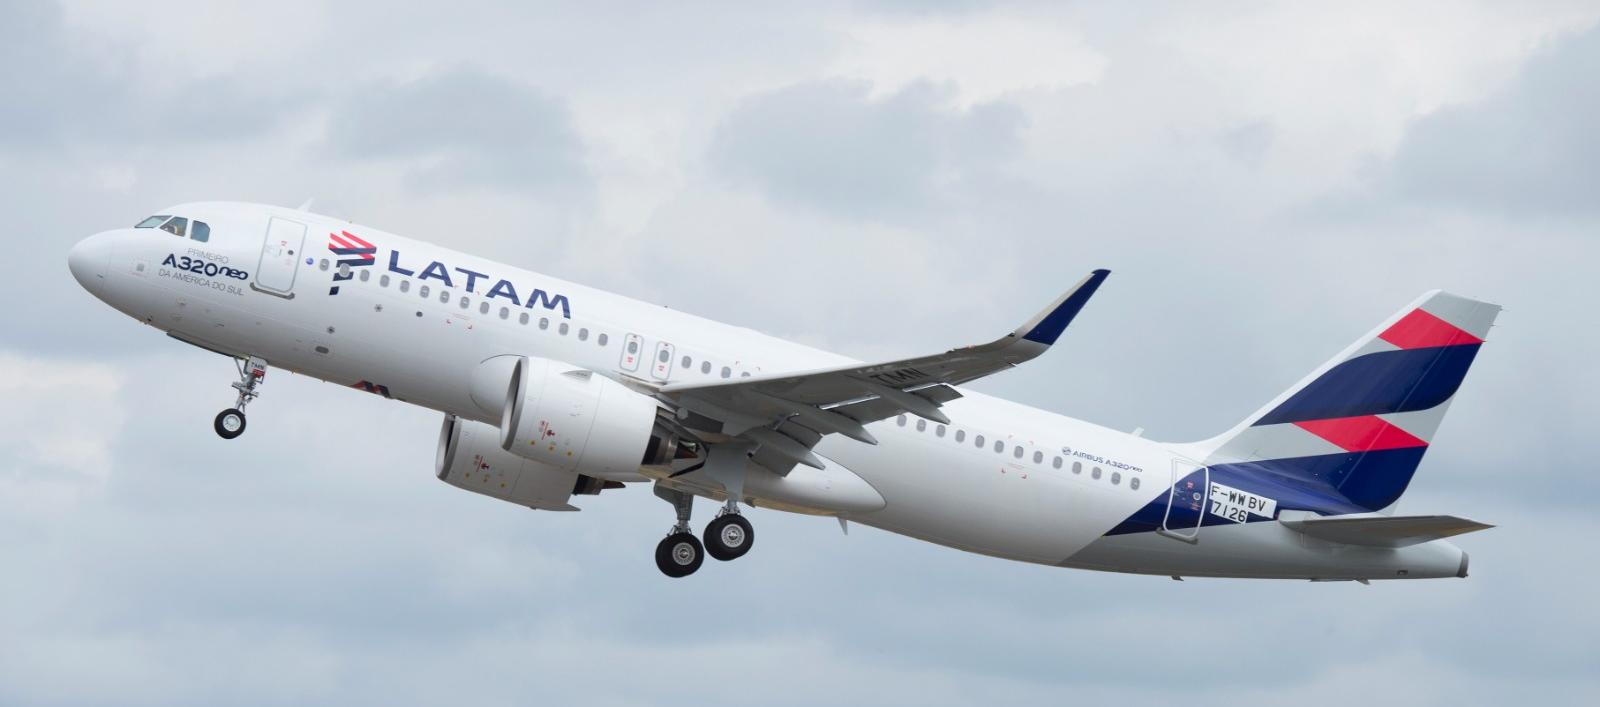 Latam no puede vender vuelos desde y hacia Bogotá sin tener autorizados los permisos de despegue y aterrizaje